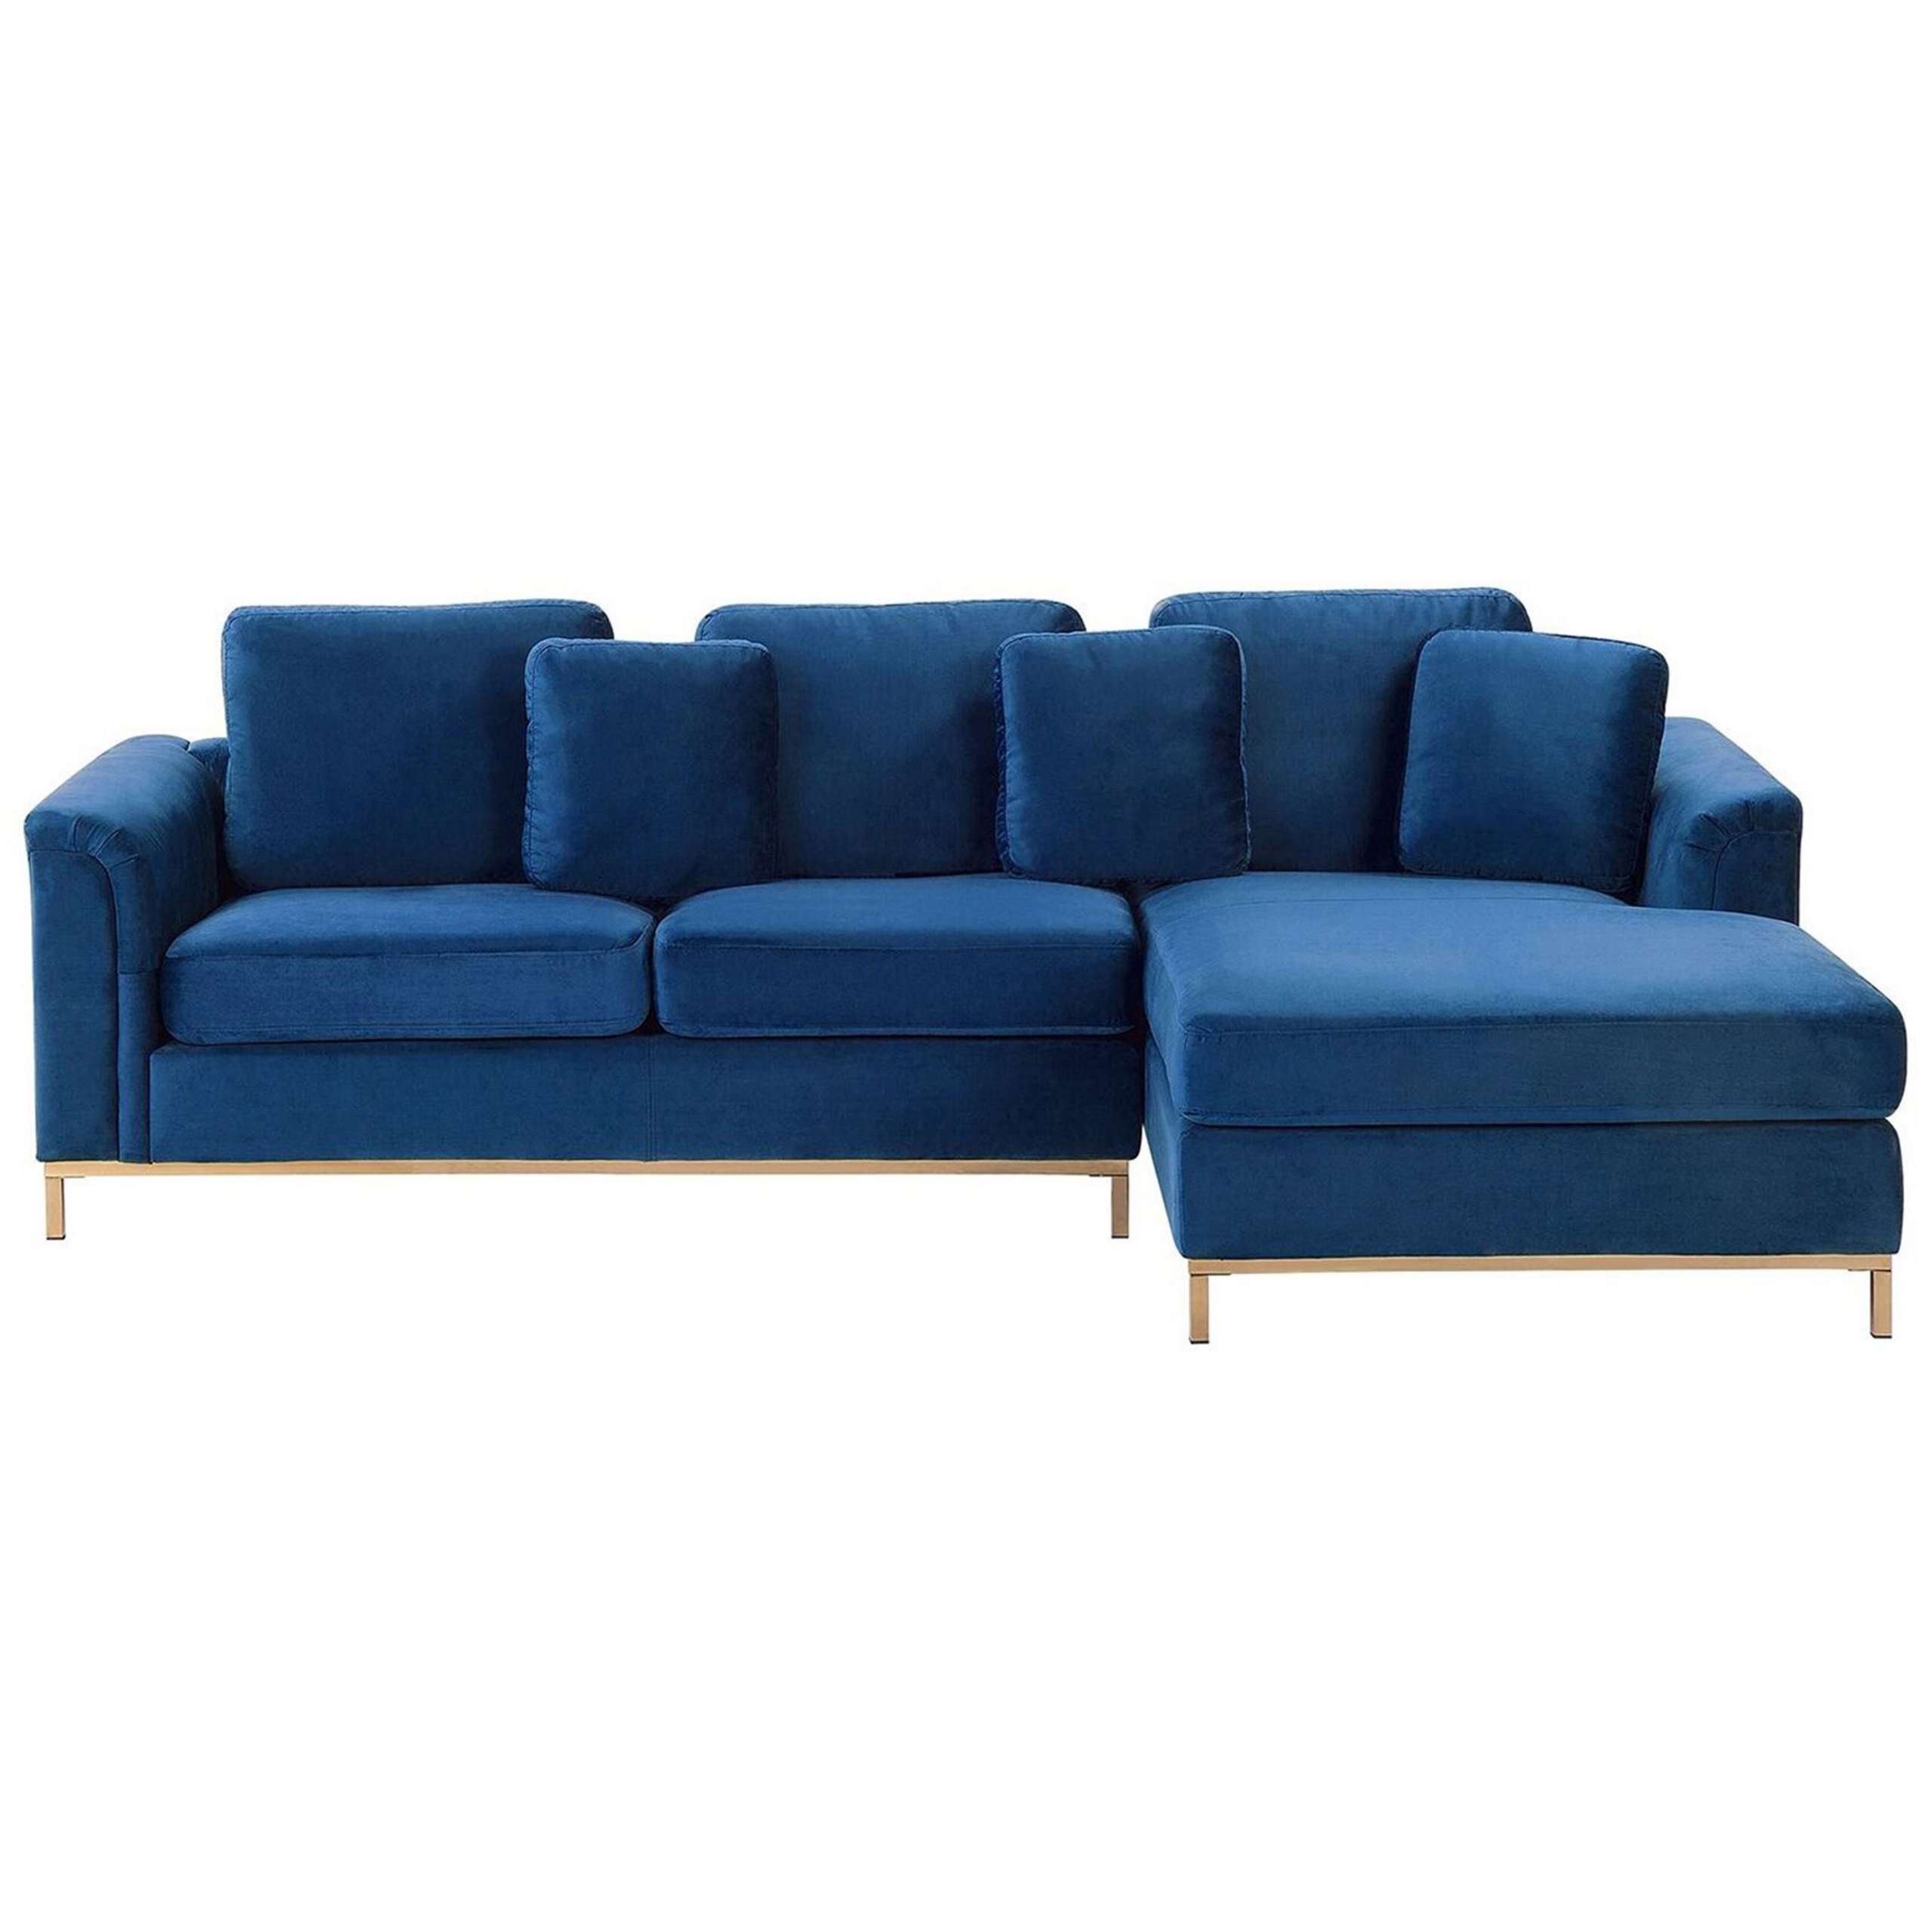 Beliani Corner Sofa Blue Velvet Upholstered L-shaped Left Hand Orientation